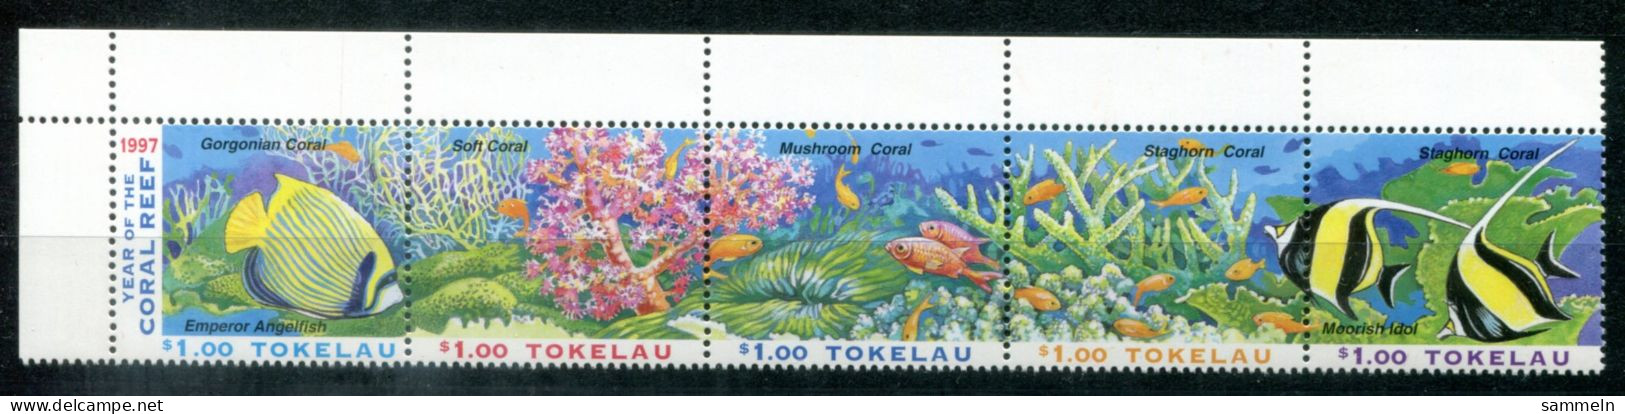 TOKELAU 253-257 Zdr. Mnh - Korallenriff, Coral Reef, Récif De Corail, Fisch, Fish, Poisson - TOKÉLAOU - Tokelau